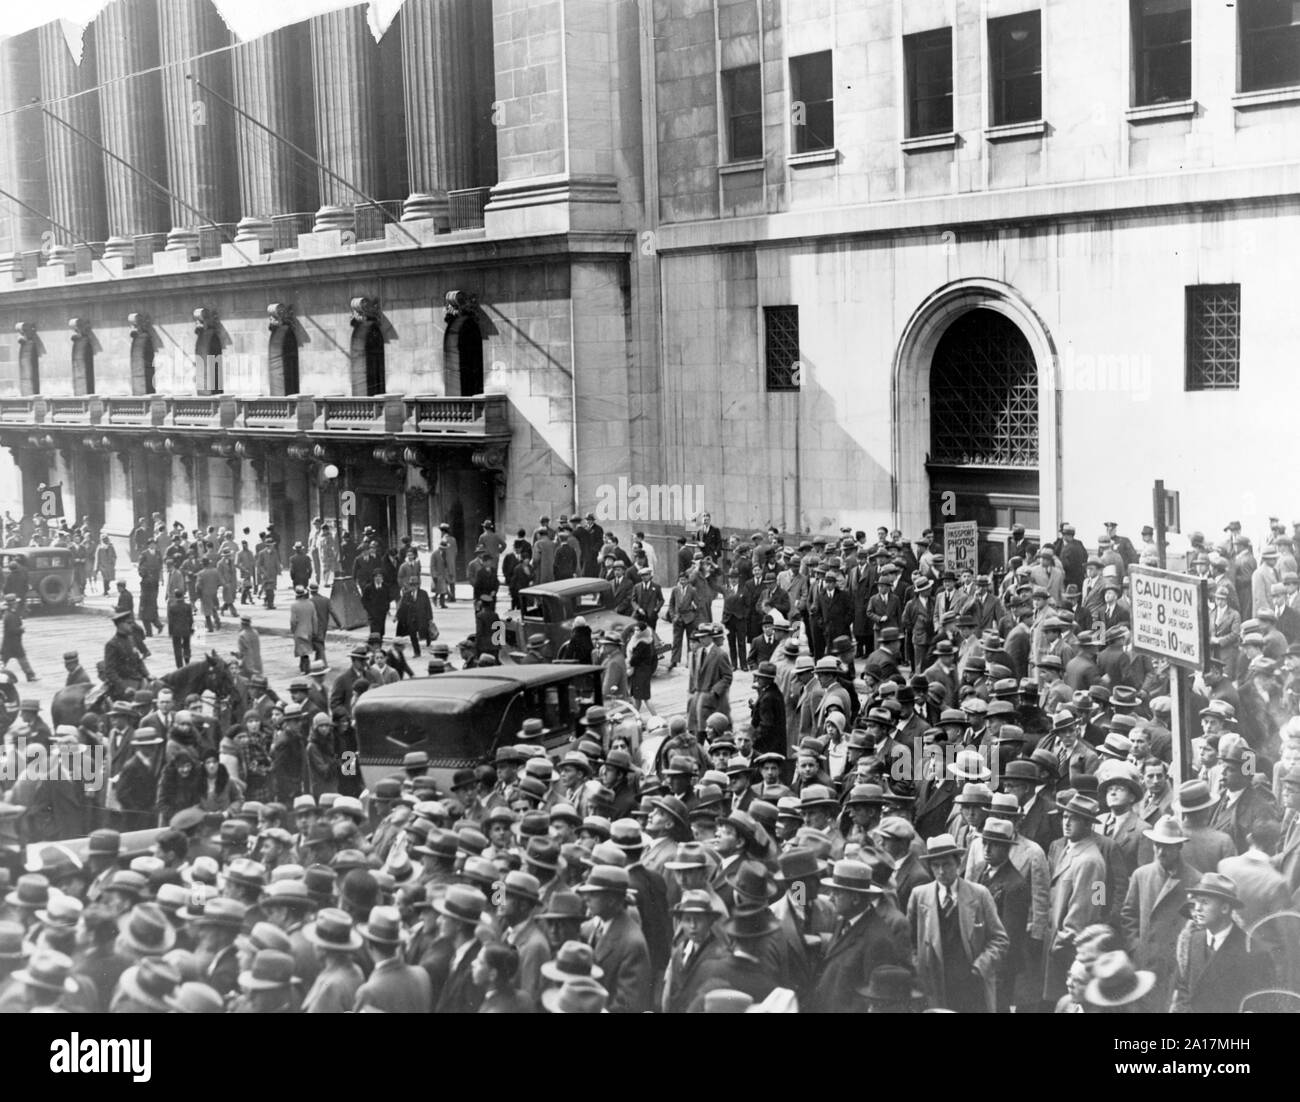 Multitud de personas se reúnen fuera de la Bolsa de Valores de Nueva York, tras el accidente de 1929. El Crash de Wall Street de 1929, también conocido como te crac bursátil de 1929 o el Gran Crash, fue una importante caída del mercado bursátil que se produjo a finales de octubre de 1929 Foto de stock